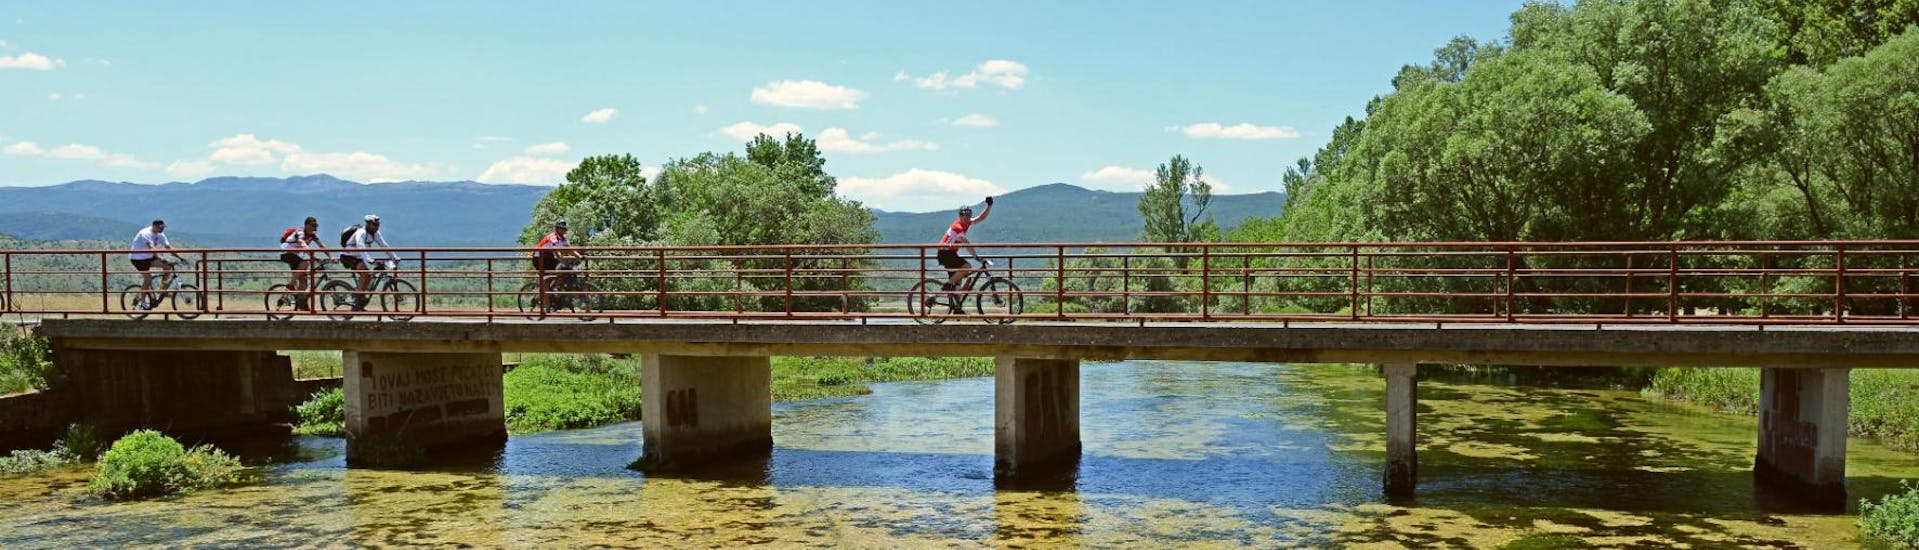 Tijdens de Cetina Spring Bike Tour vanuit Sinj steken fietsers een brug over onder leiding van een gecertificeerde gids van Hotel Alkar.